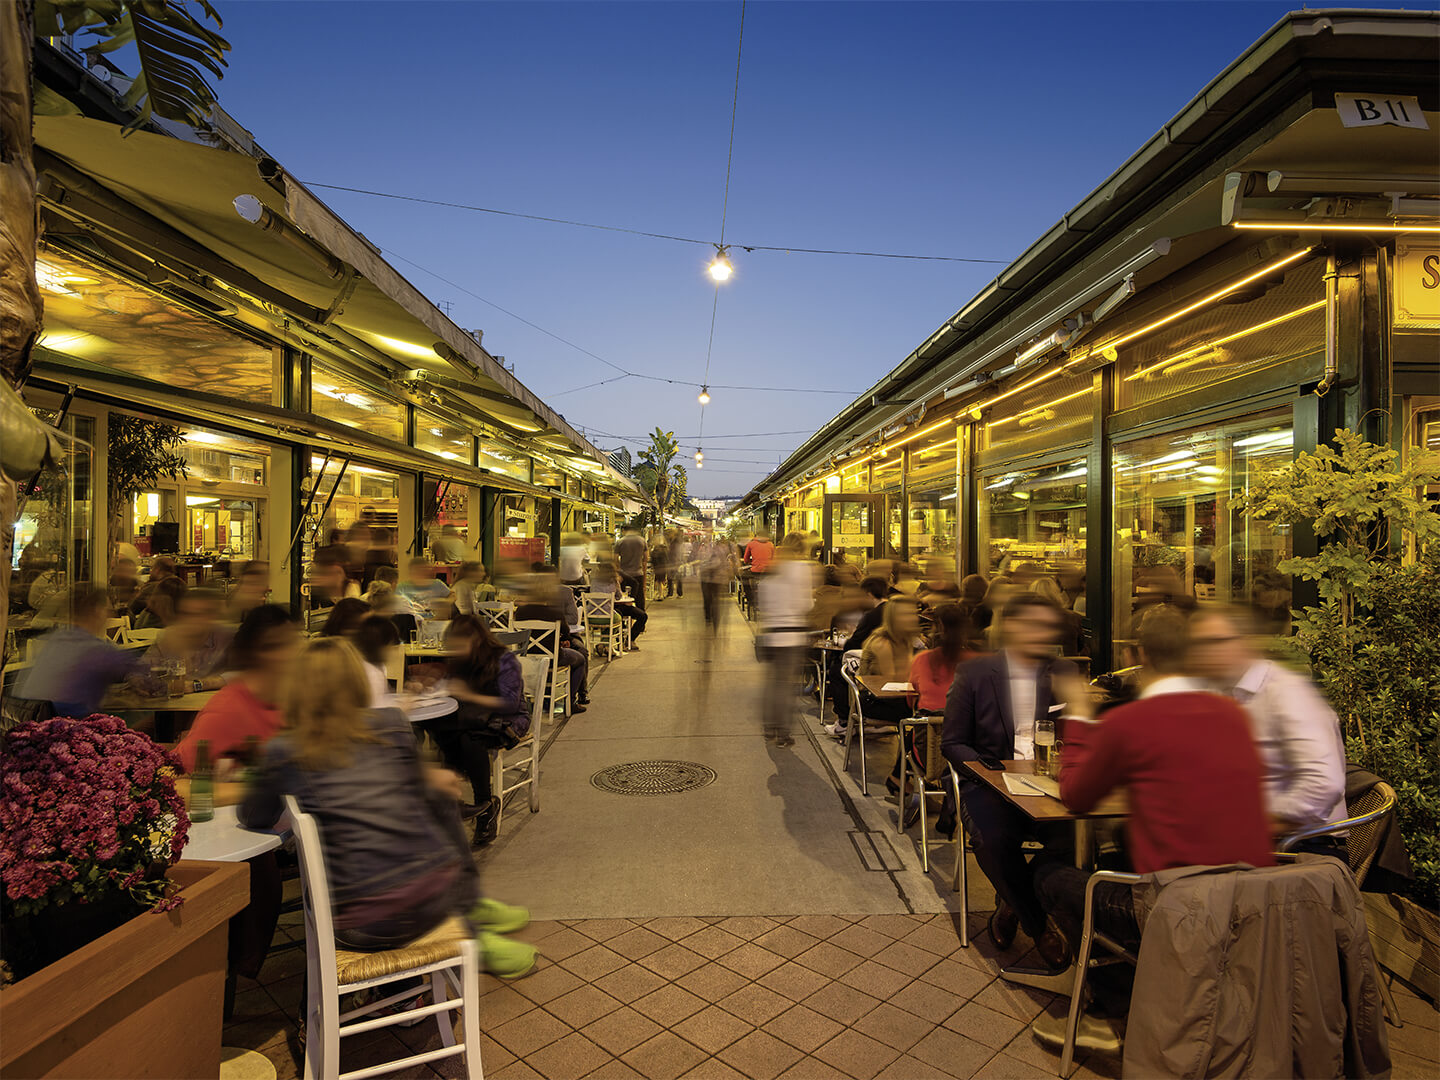 Foto: Menschen beim Essen und Trinken am Wiener Naschmarkt